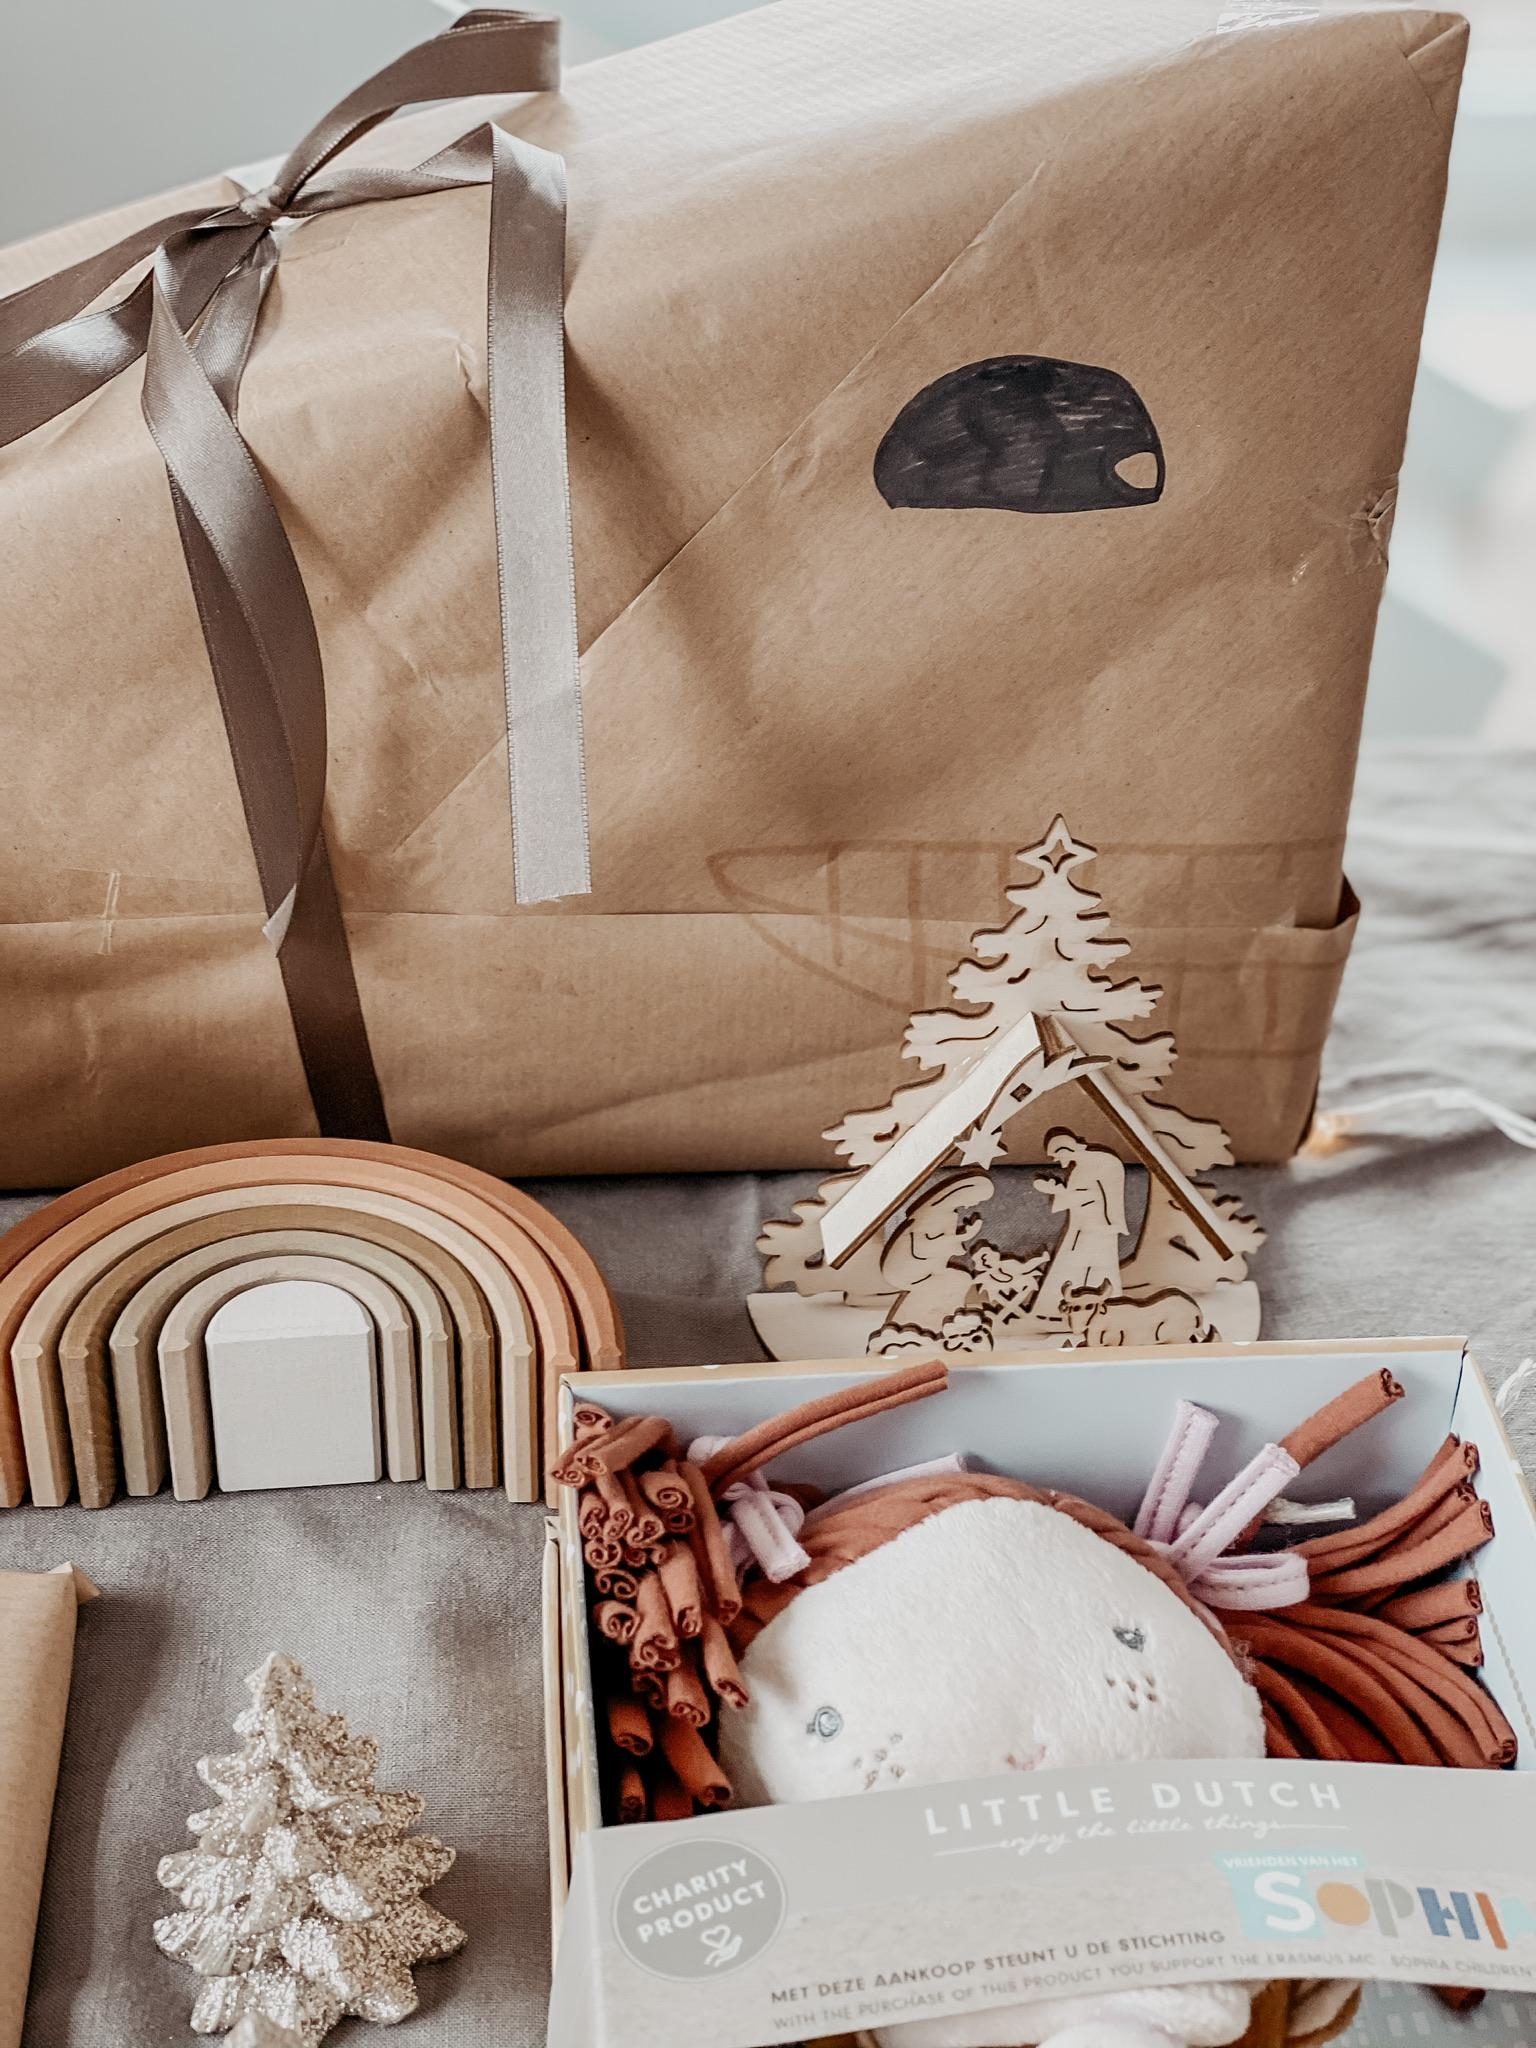 Ich nenne es Haifutter. 
#geschenkverpackung #couchstyle #weihnachtsgeschenke